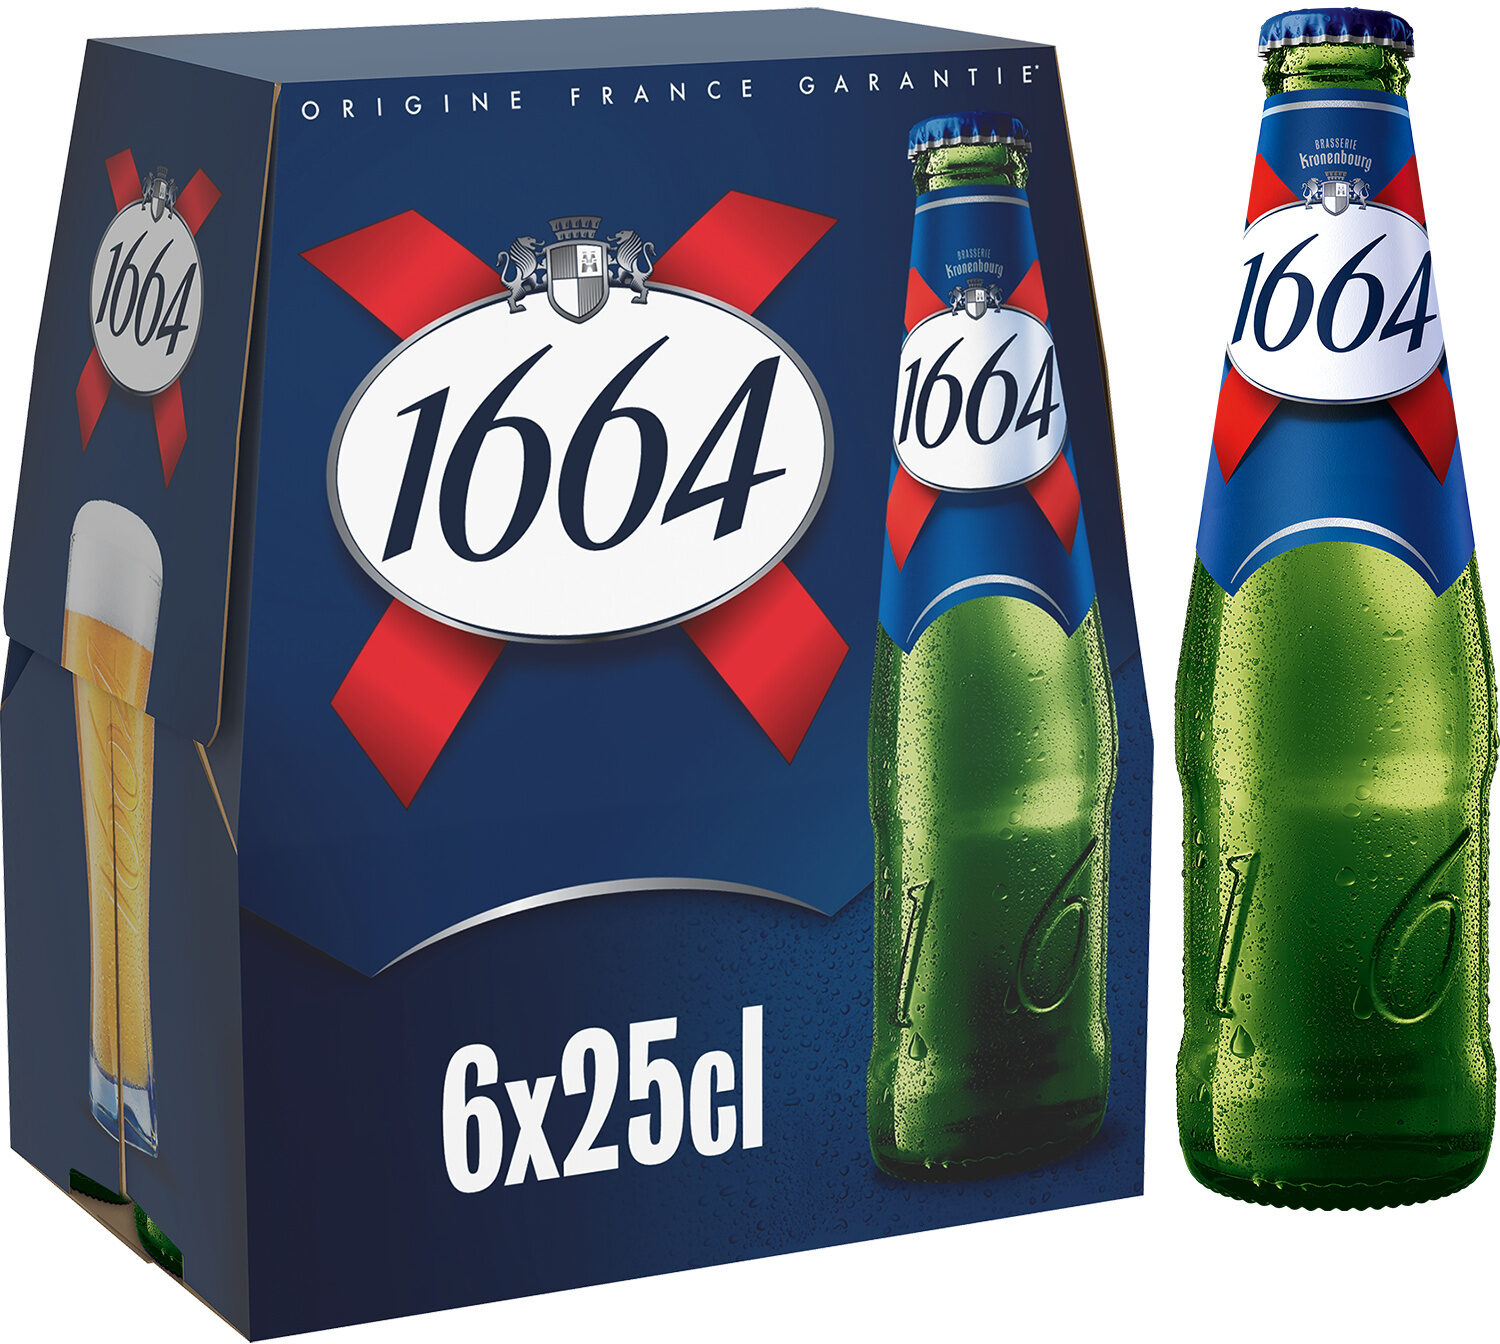 1664 6x25cl 1664 5.5 degre alcool - Produit